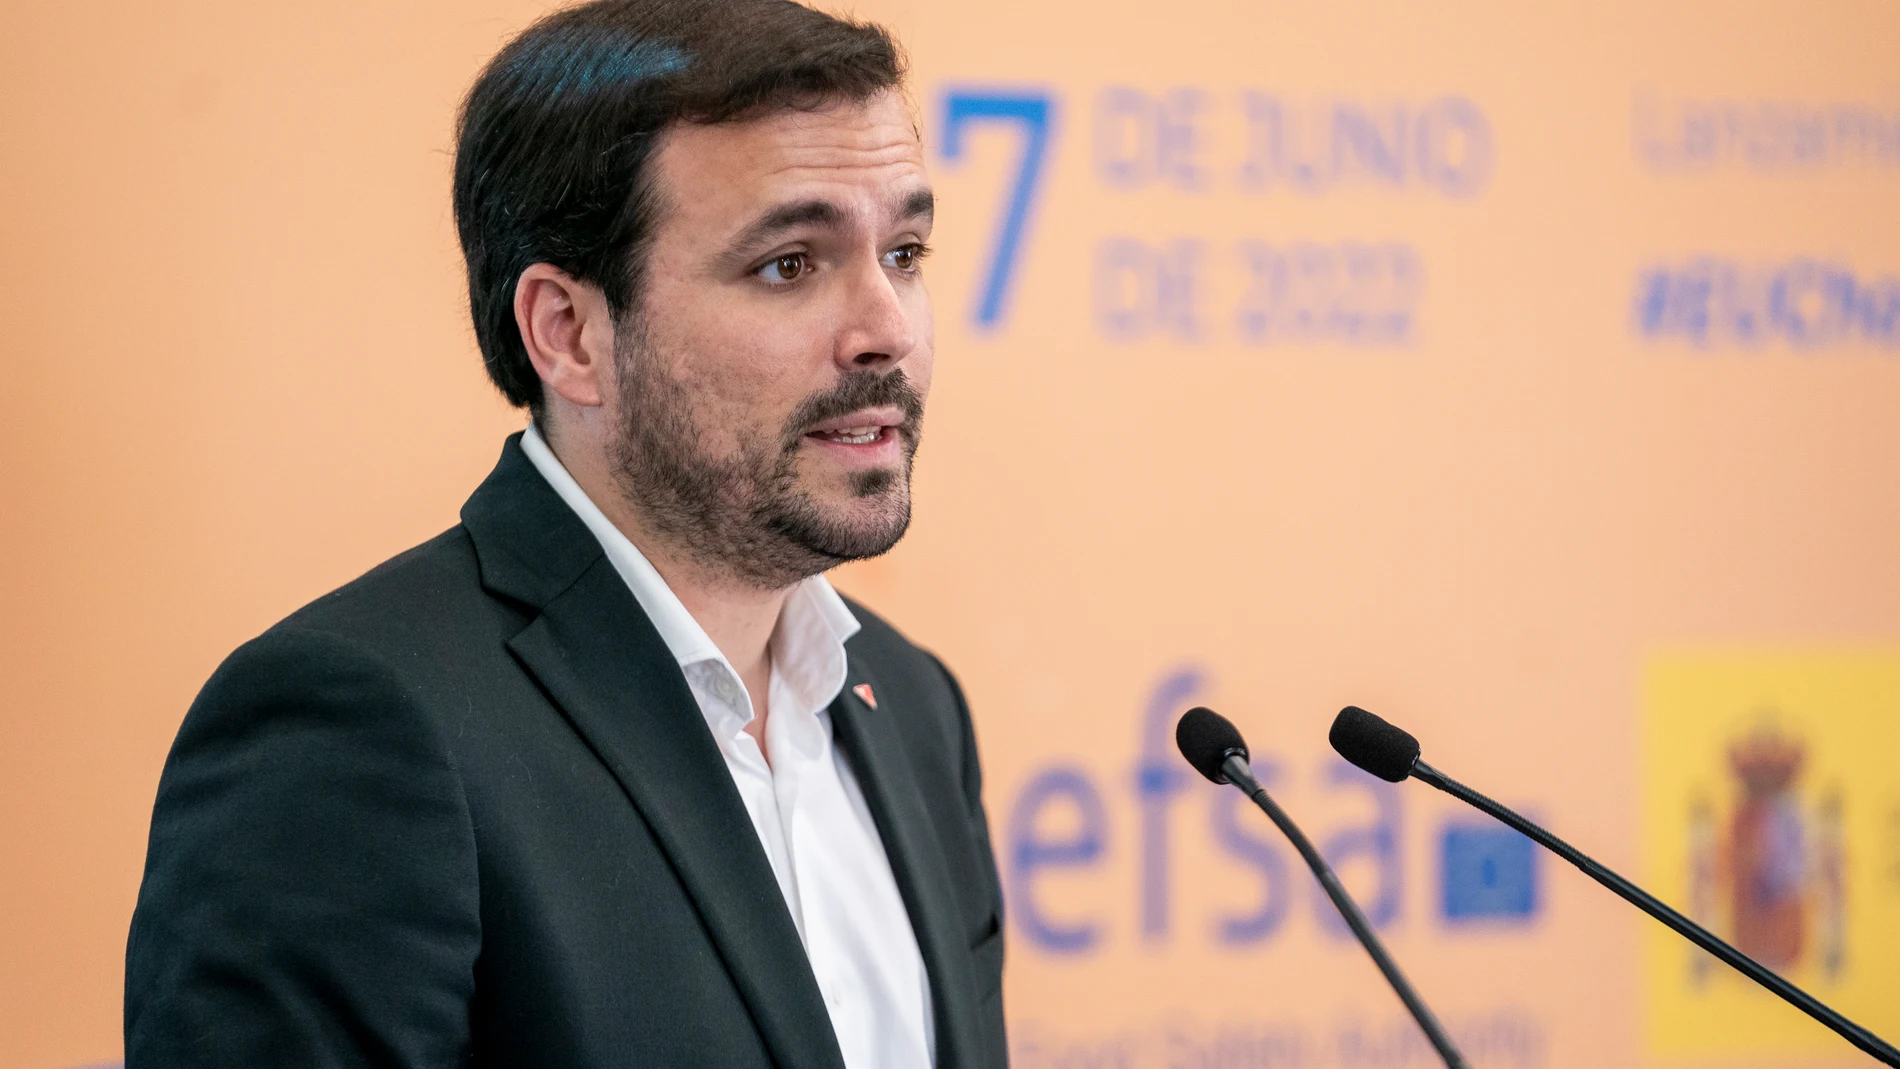 El ministro de Consumo, Alberto Garzón, interviene en el evento de lanzamiento de una campaña de EFSA, en la Sala Valle-Inclán del Círculo de Bellas Artes